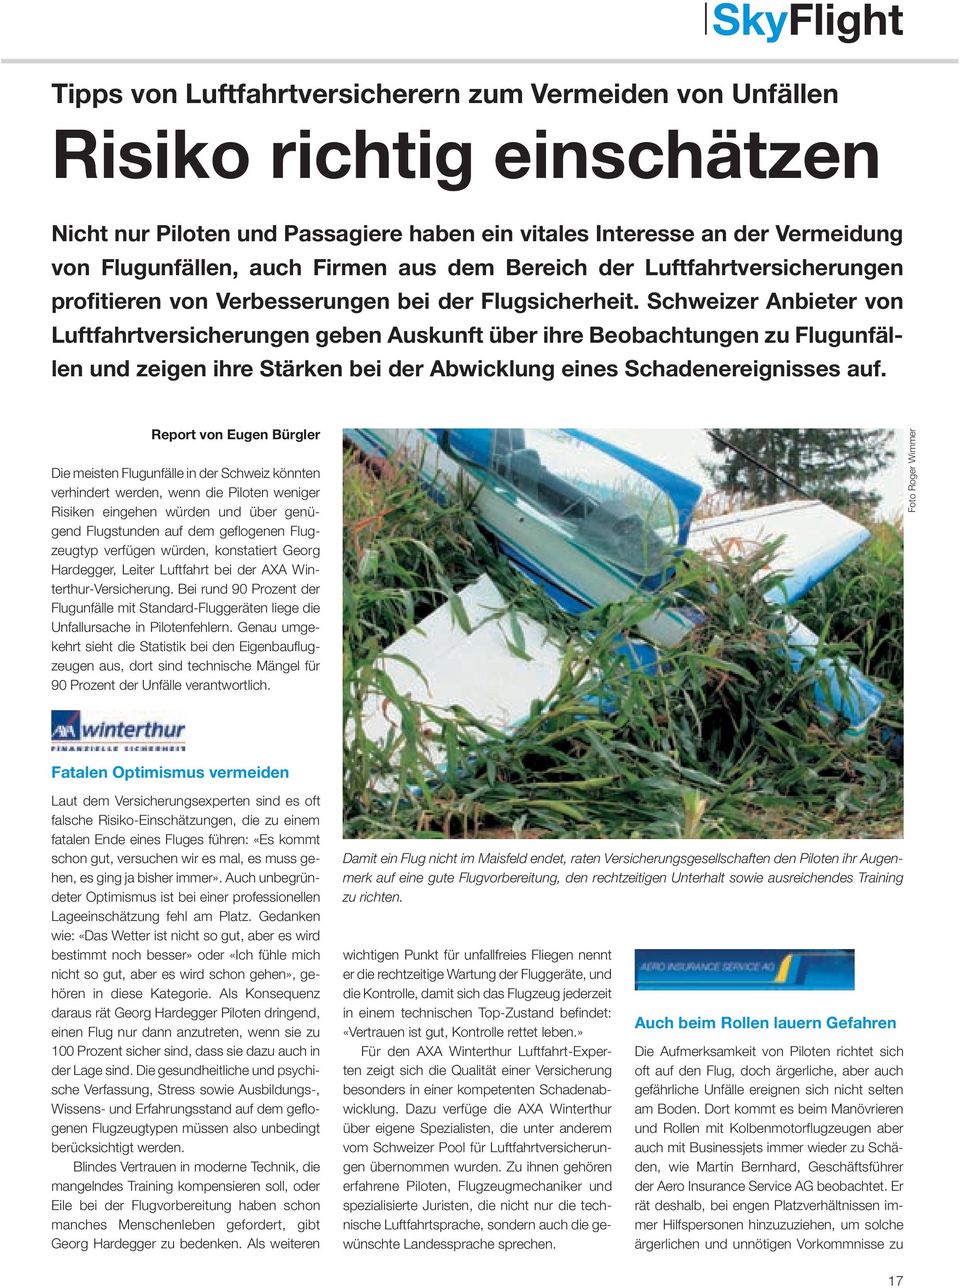 Schweizer Anbieter von Luftfahrtversicherungen geben Auskunft über ihre Beobachtungen zu Flugunfällen und zeigen ihre Stärken bei der Abwicklung eines Schadenereignisses auf.